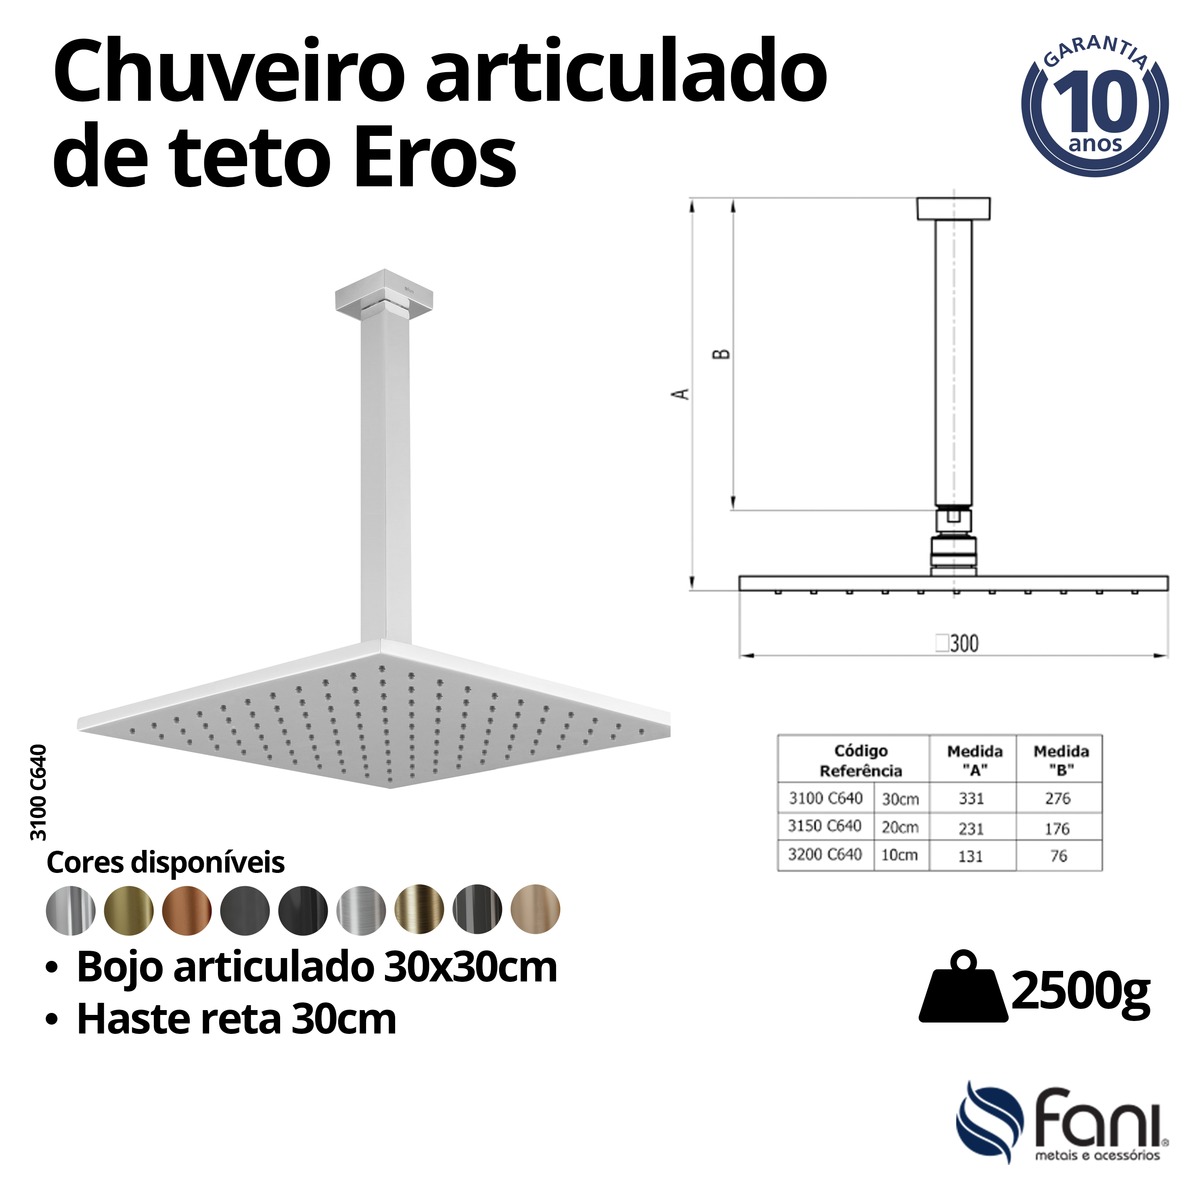 Chuveiro Articulado Teto Metal 30cm Eros 3100OV640 Ouro Velho Fani